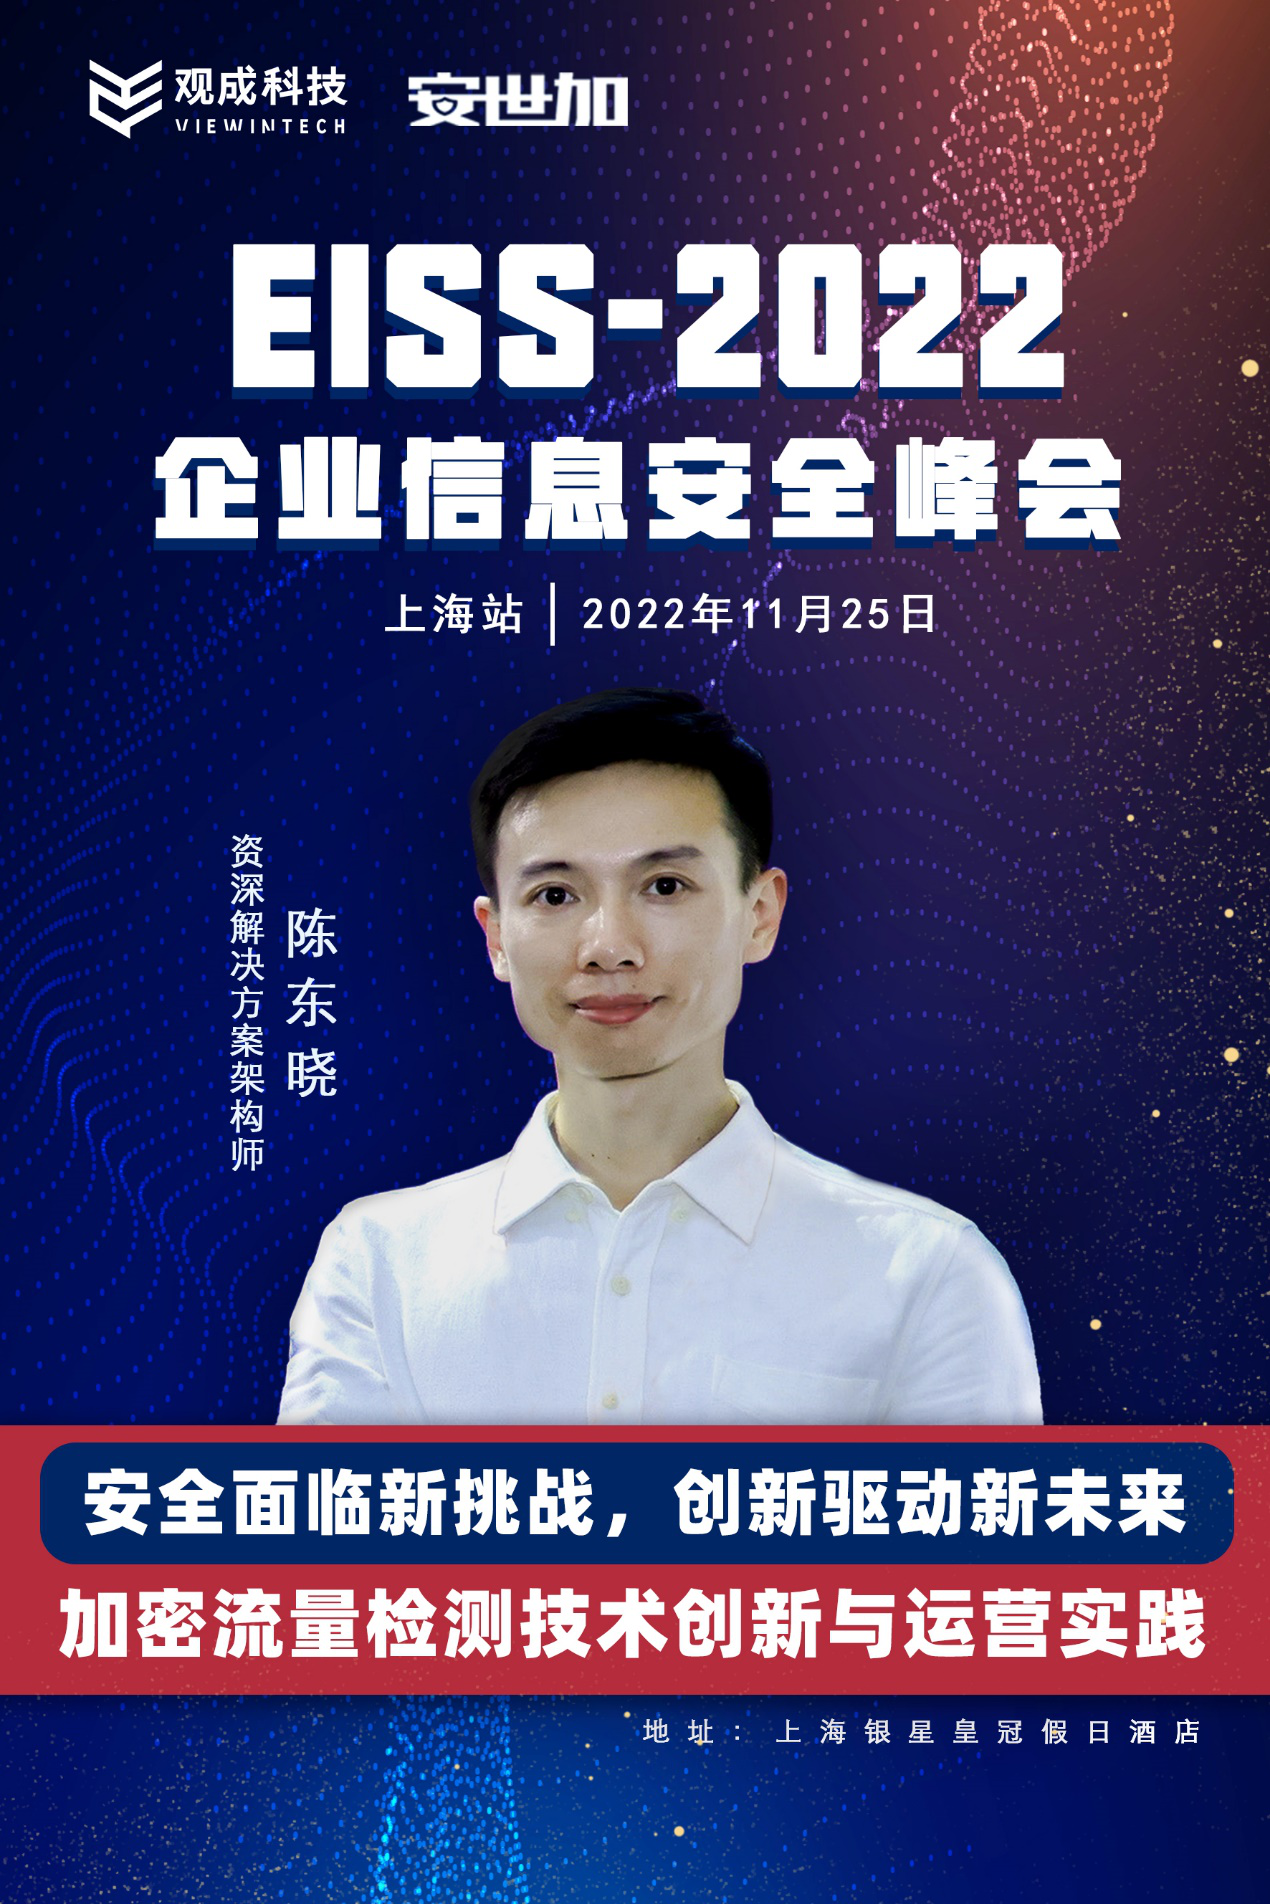 【11.25 上海站】观成科技邀您相约EISS-2022企业信息安全峰会